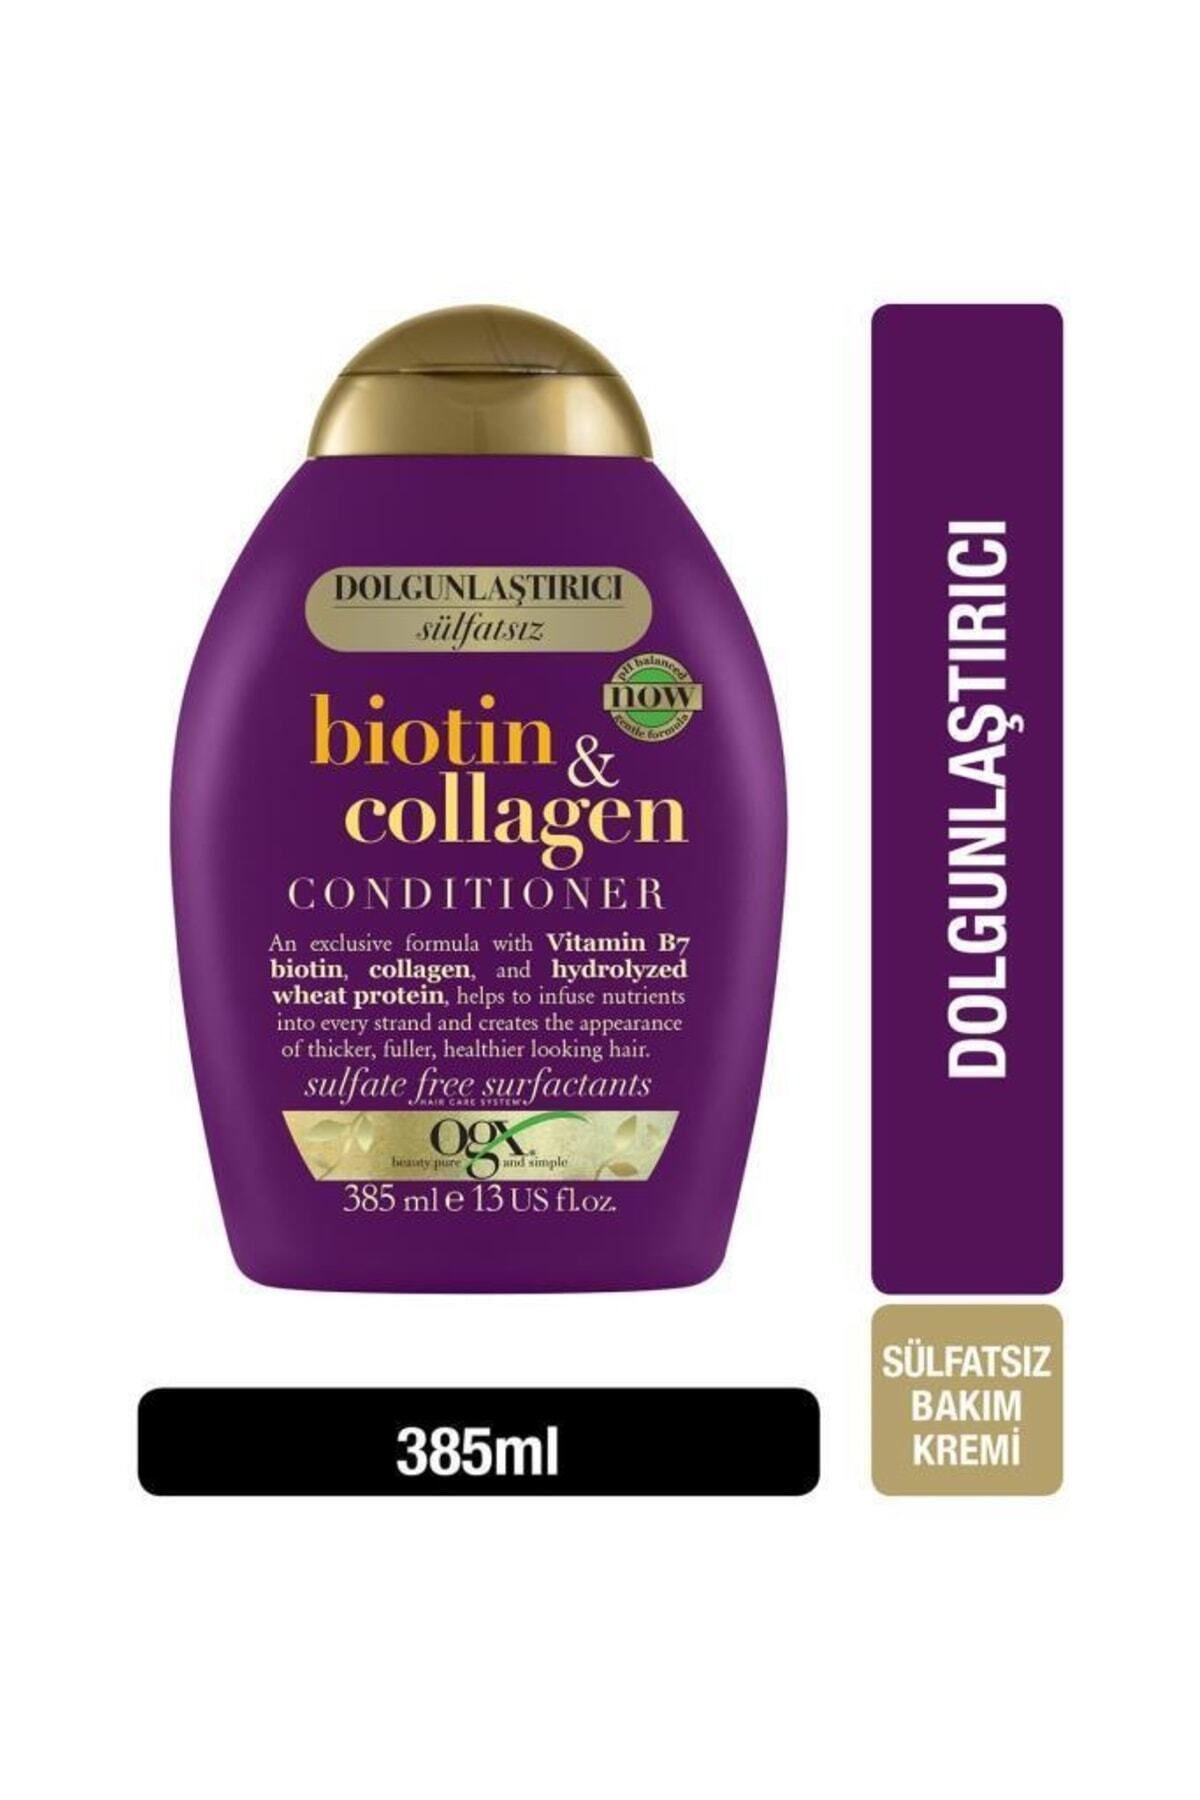 OGX Dolgunlaştirici Biotin & Kolajen Sülfatsız Saç Bakim Kremi 385 ml